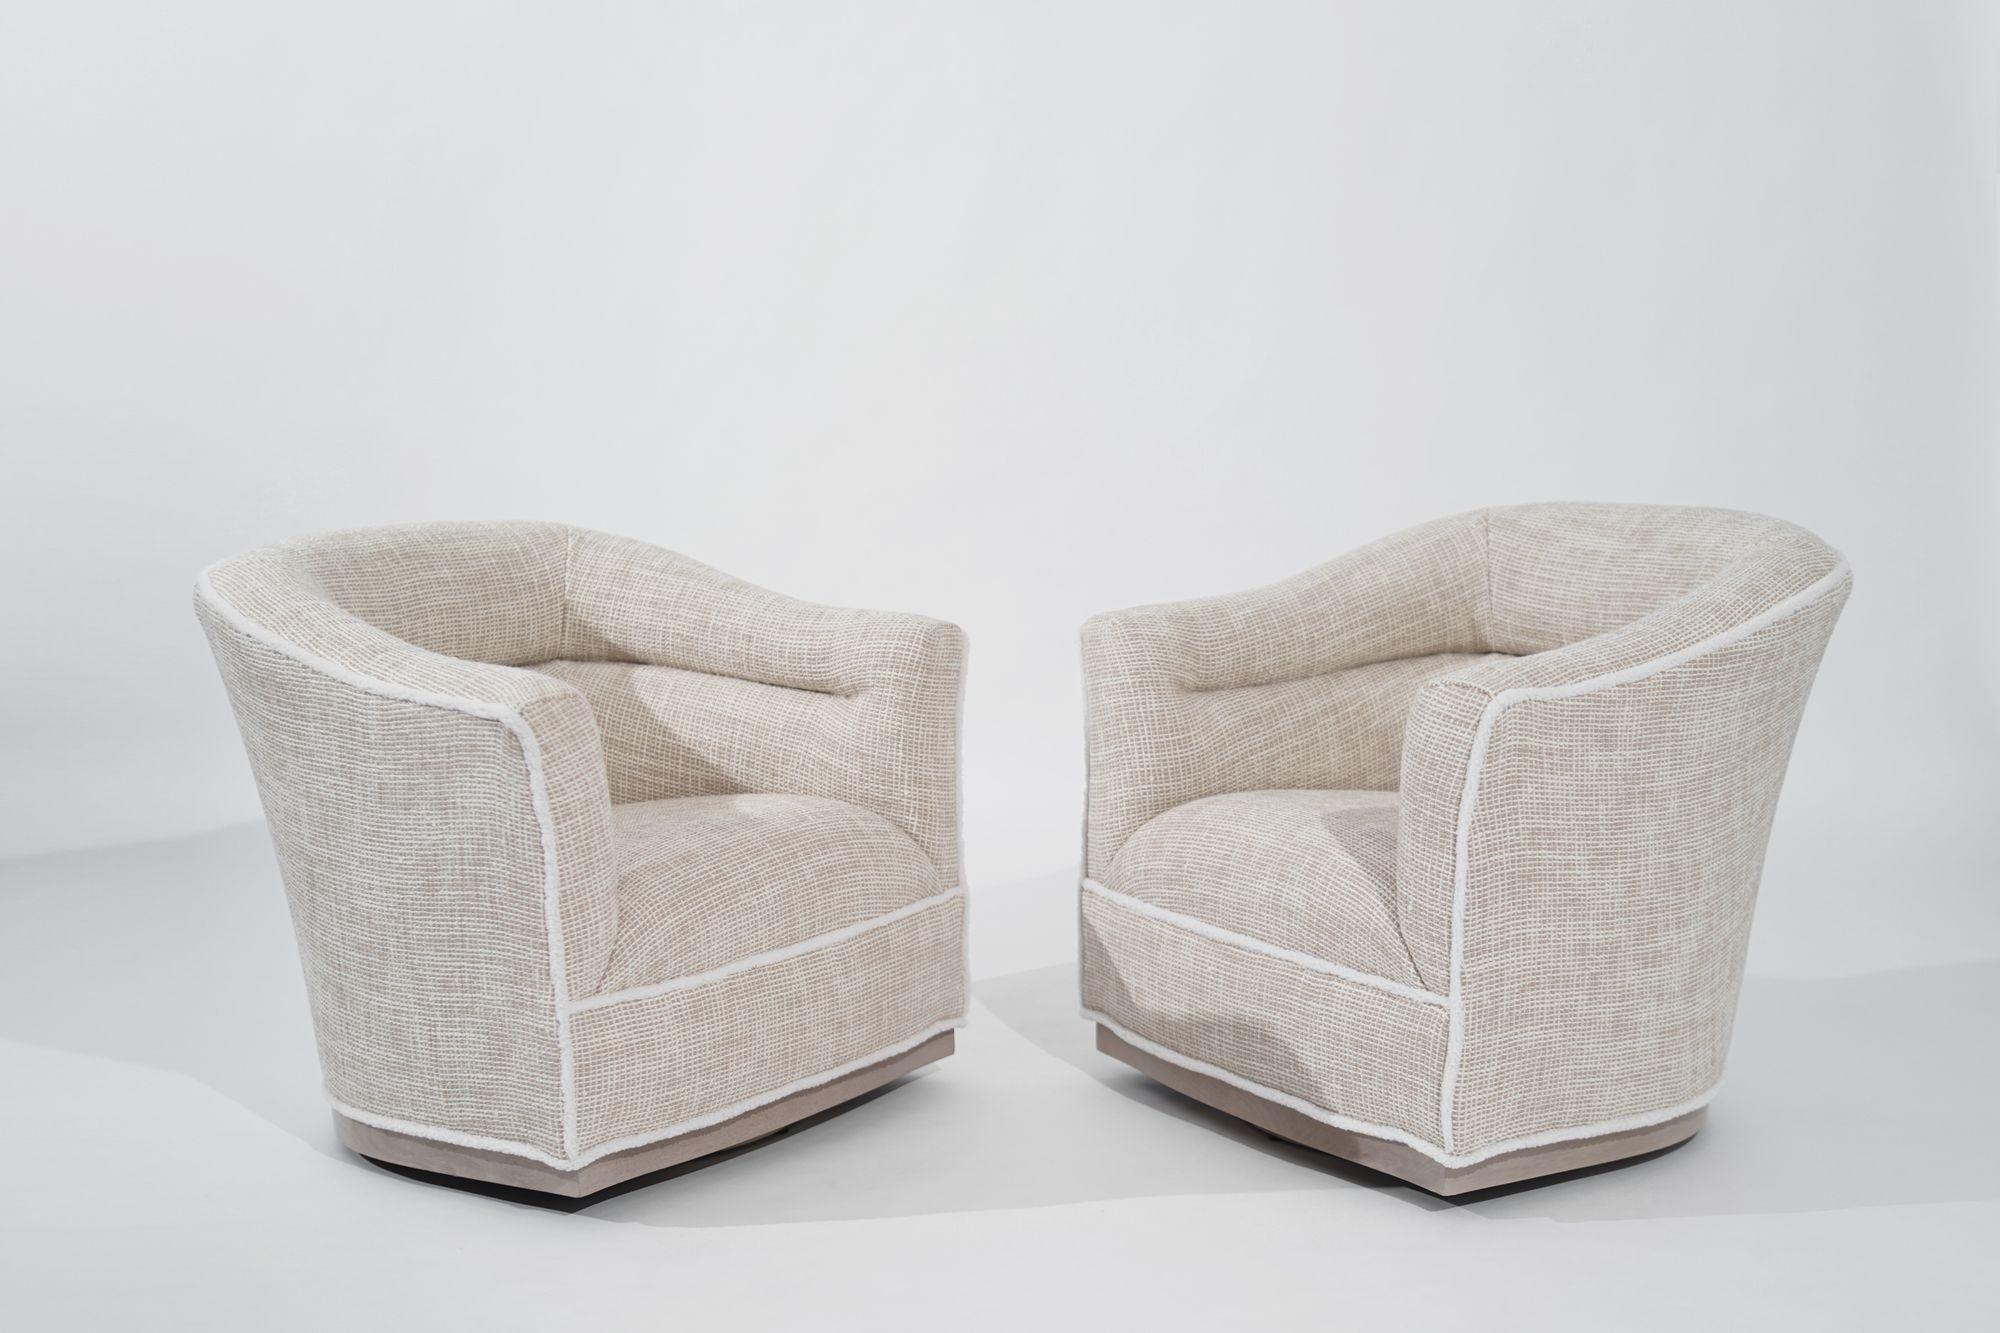 Superbe paire de chaises pivotantes The Modern Scandinavian, originaires de Suède et fabriquées dans les années 1950. Méticuleusement restaurées par Stamford Modern, ces chaises ont retrouvé leur éclat d'origine, mettant en valeur l'élégance